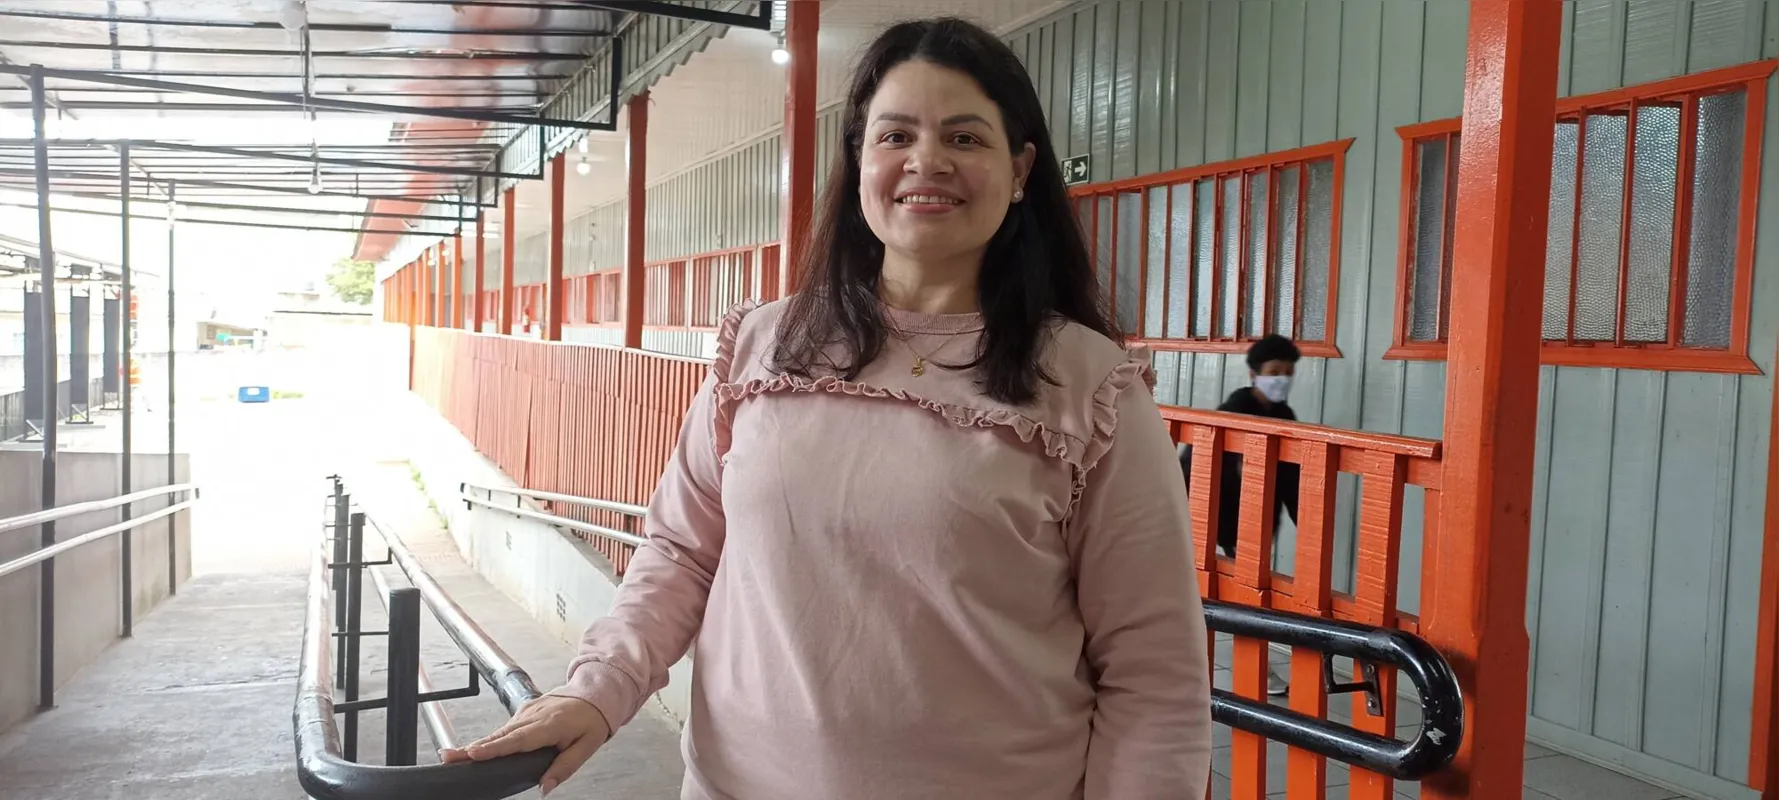 Silmara Cordeiro Monte, coordenadora da Escola Municipal Nina Gardemann:  "Apesar de não ser um assunto curricular, as eleições despertam a curiosidade dos alunos"